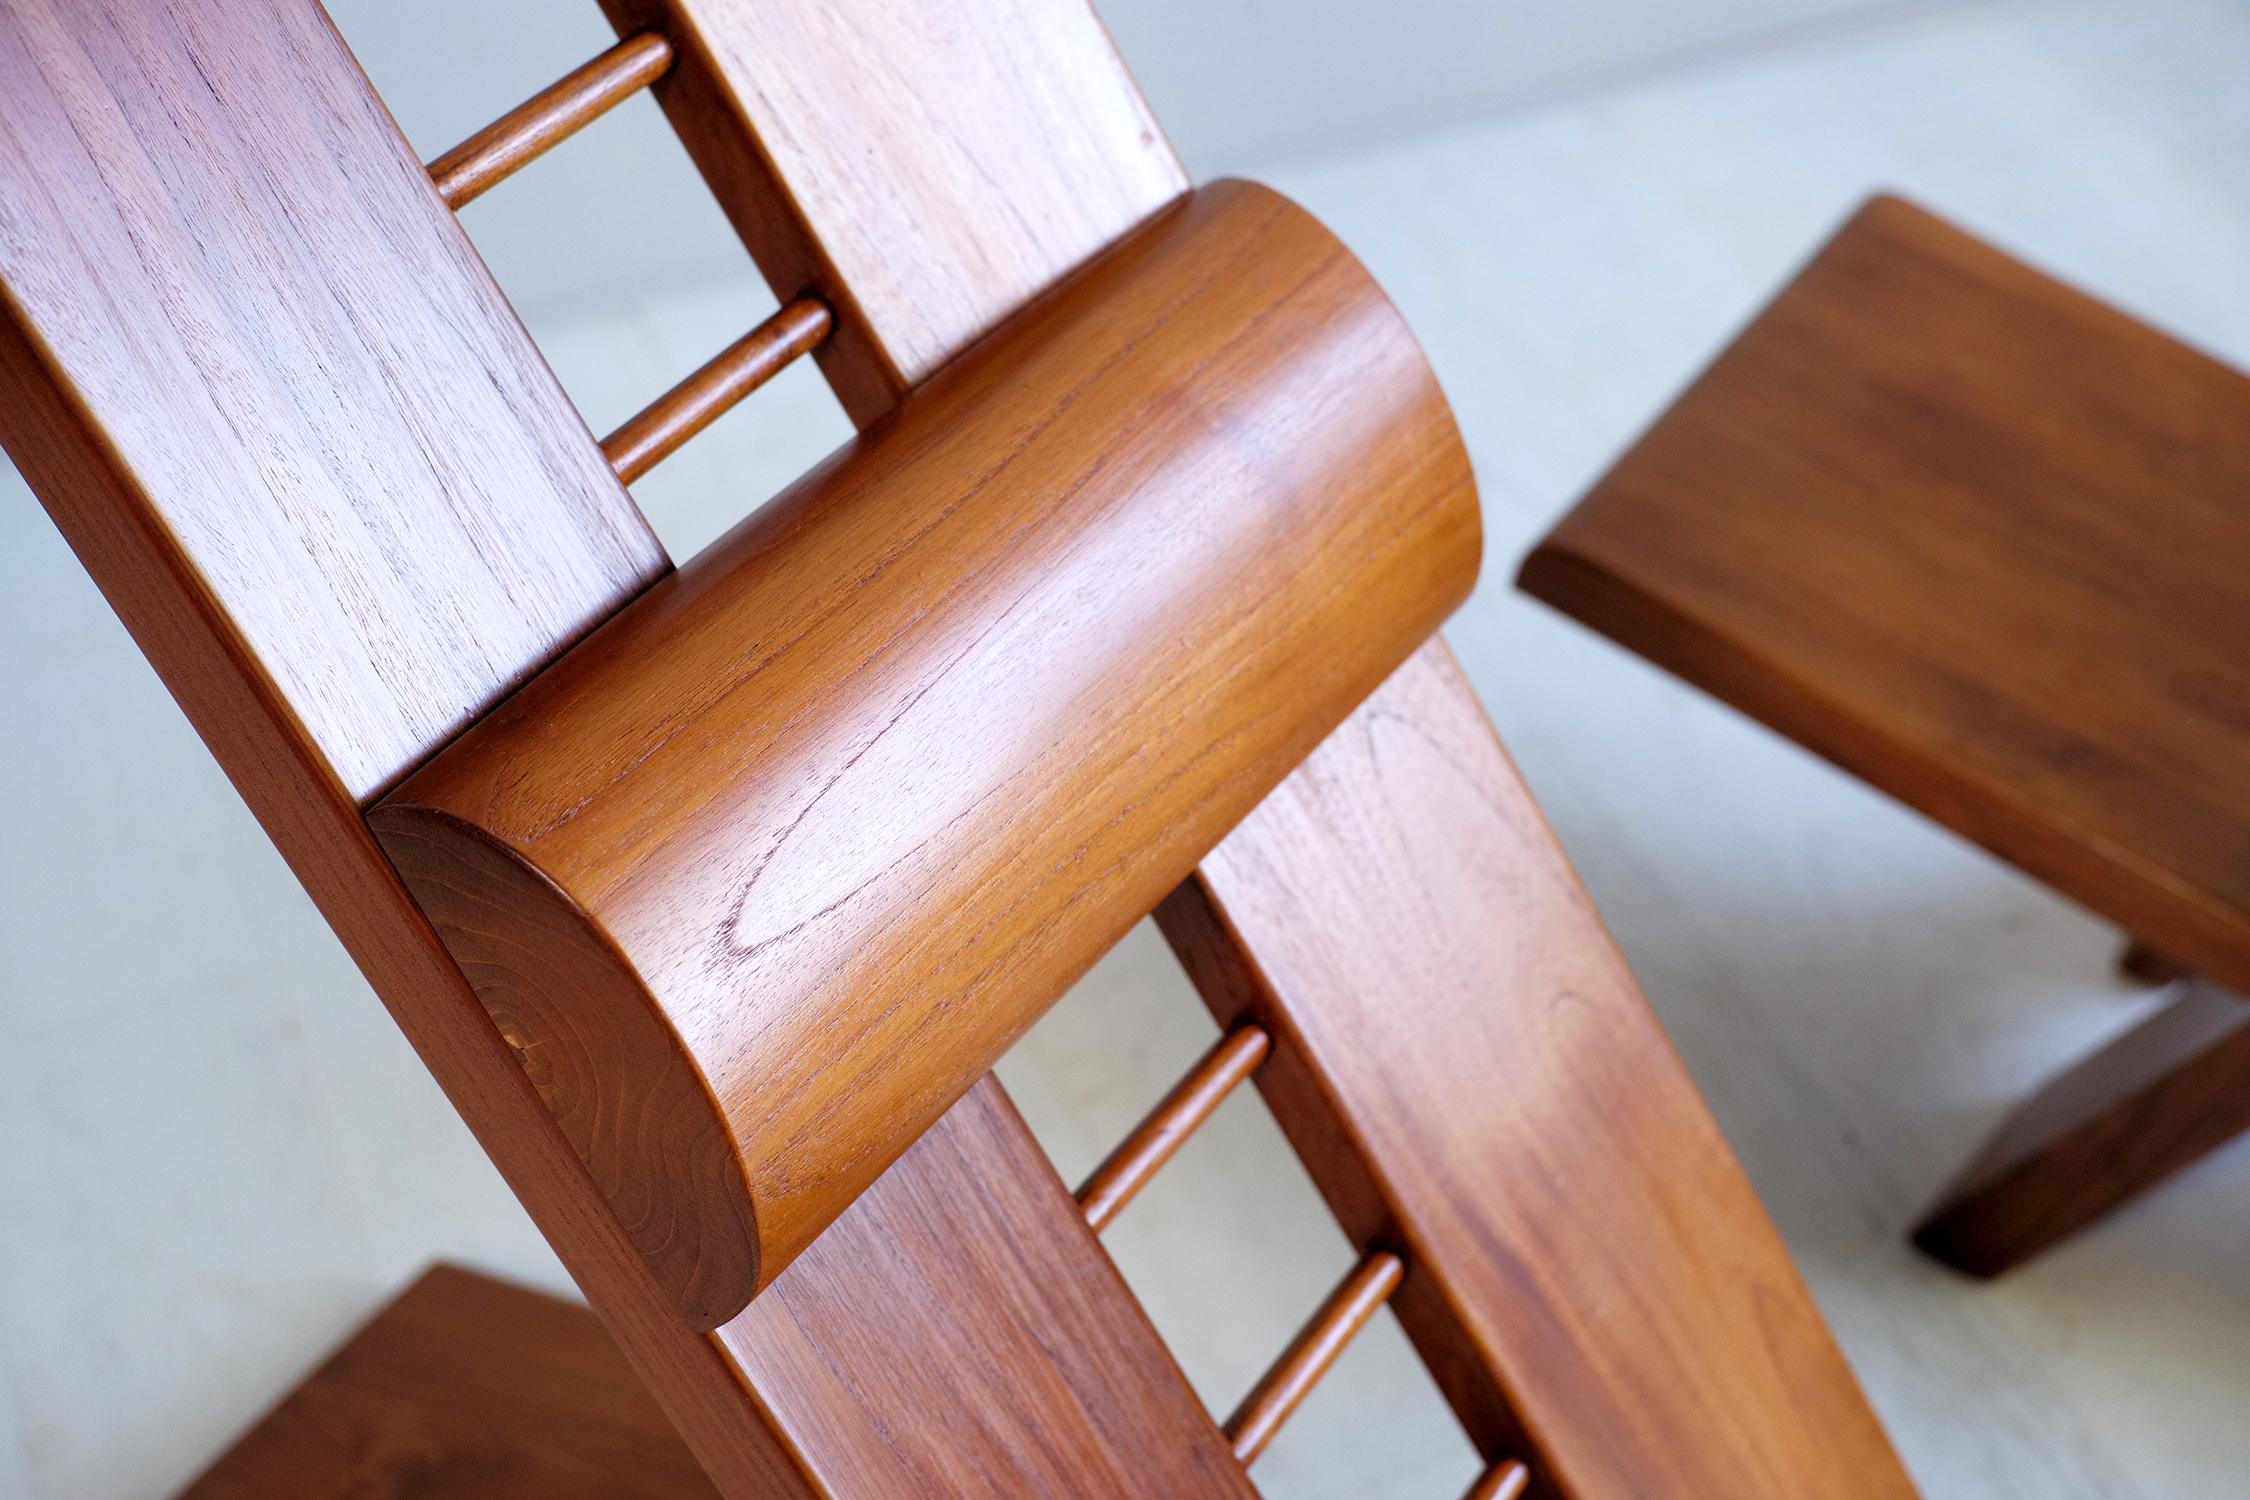 Marcel Ramond (1935), Paar große Afrika-Ulmen-Sessel, Frankreich, 1970. Nach dem Vorbild des traditionellen Palaststuhls bestehen diese Sessel aus zwei ineinander greifenden Elementen, wobei die Rückenlehne eine höhenverstellbare Kopfstütze erhält.